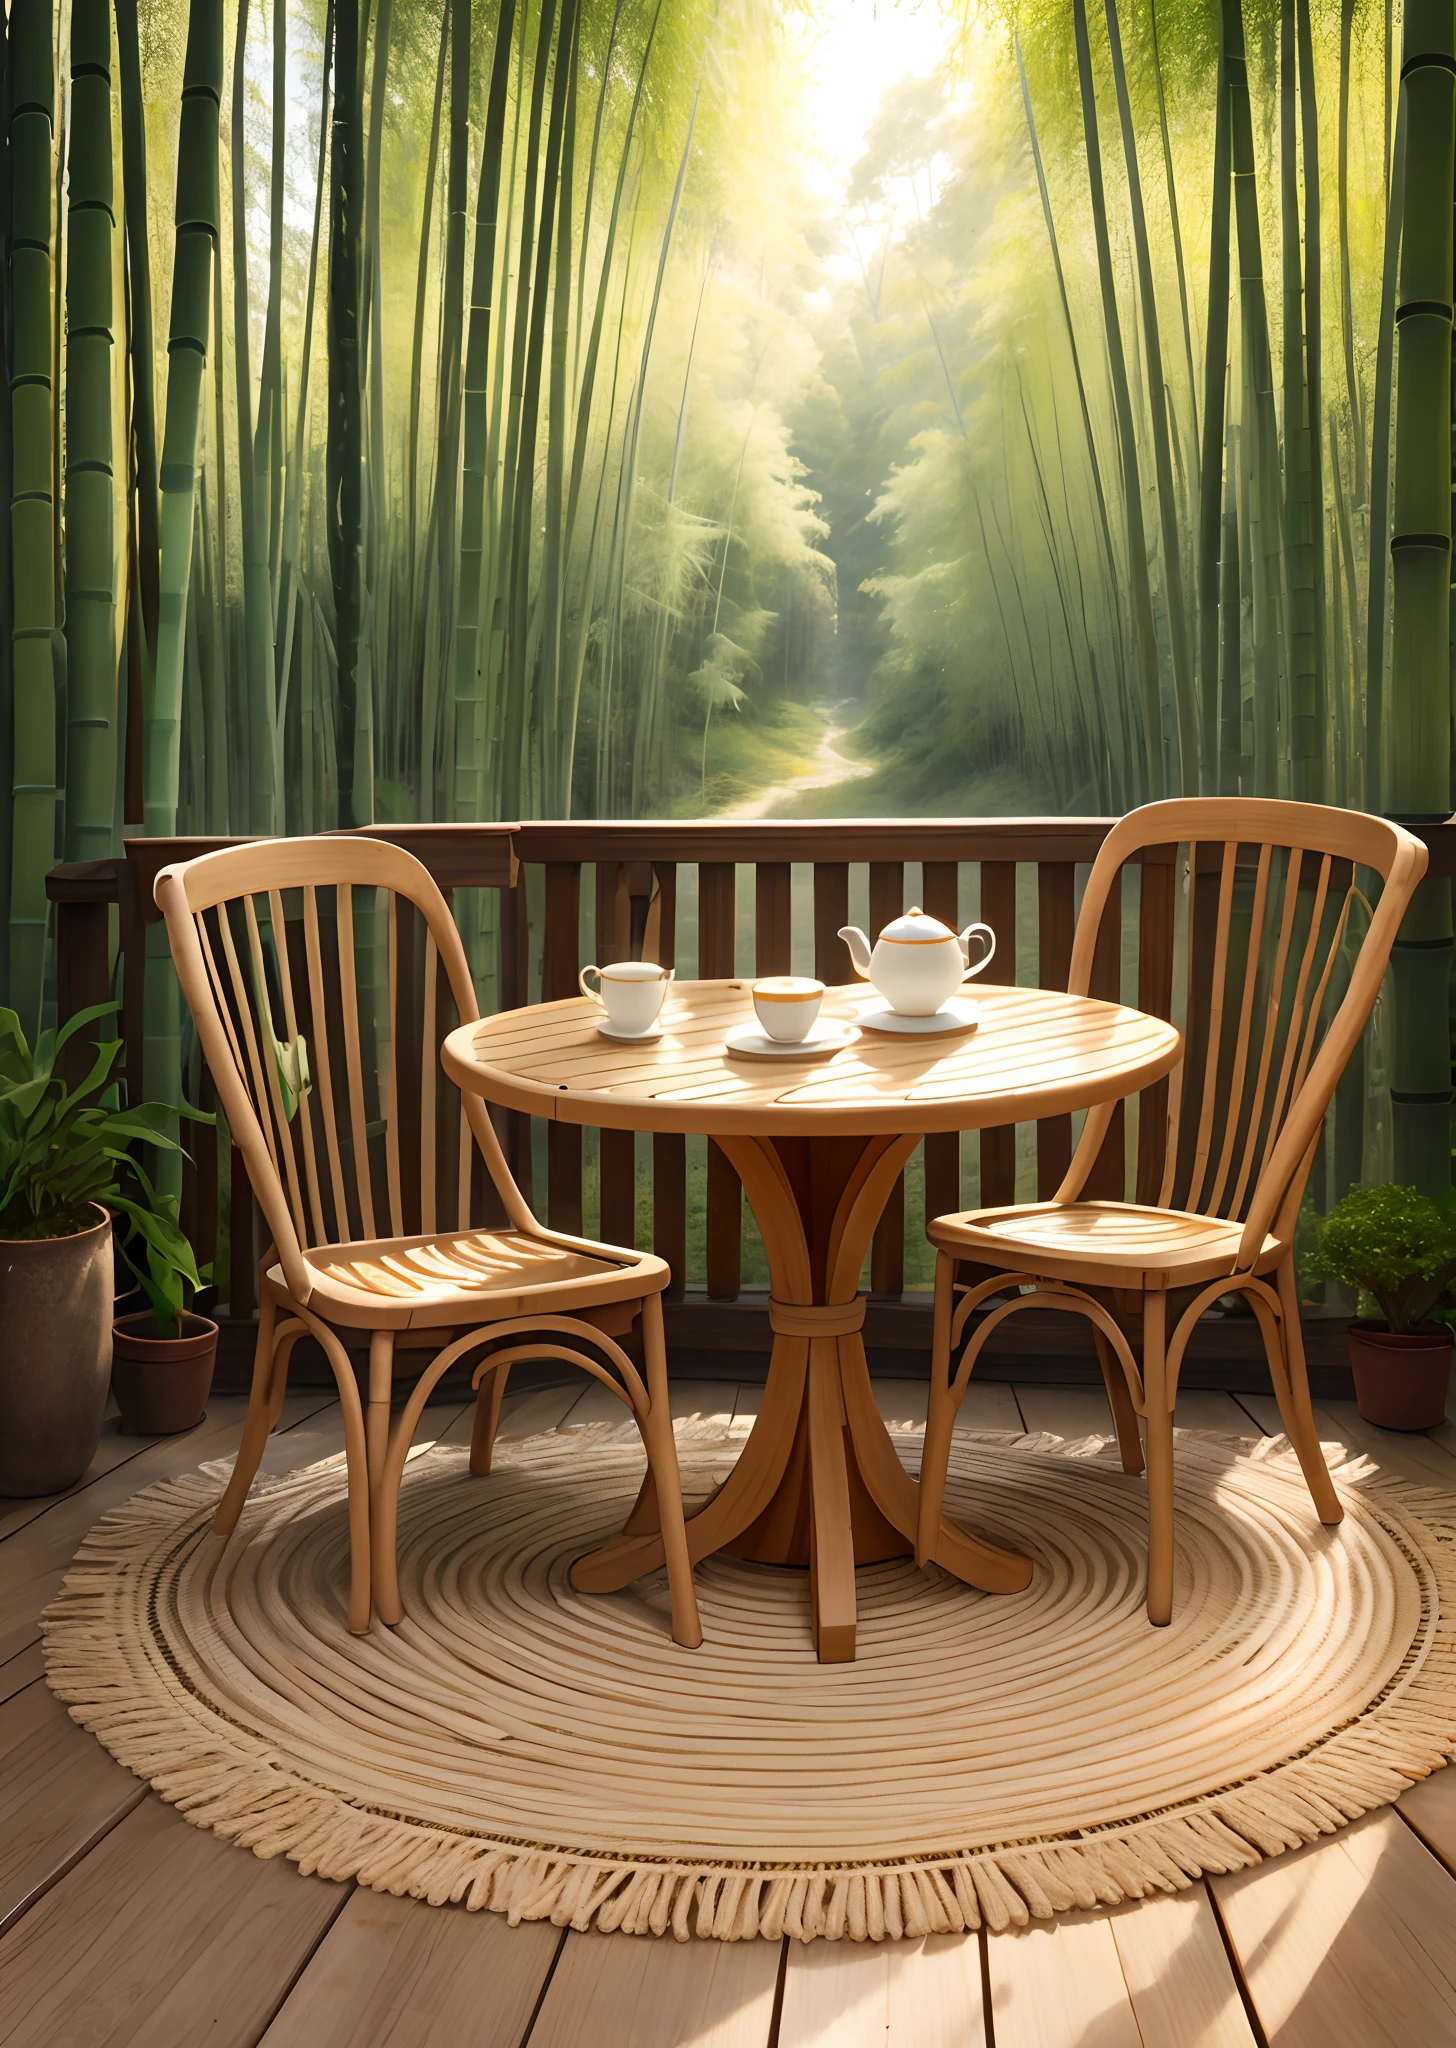 Tisch aus Bambusgeflecht，Teetasse，Sonnenstrahlen